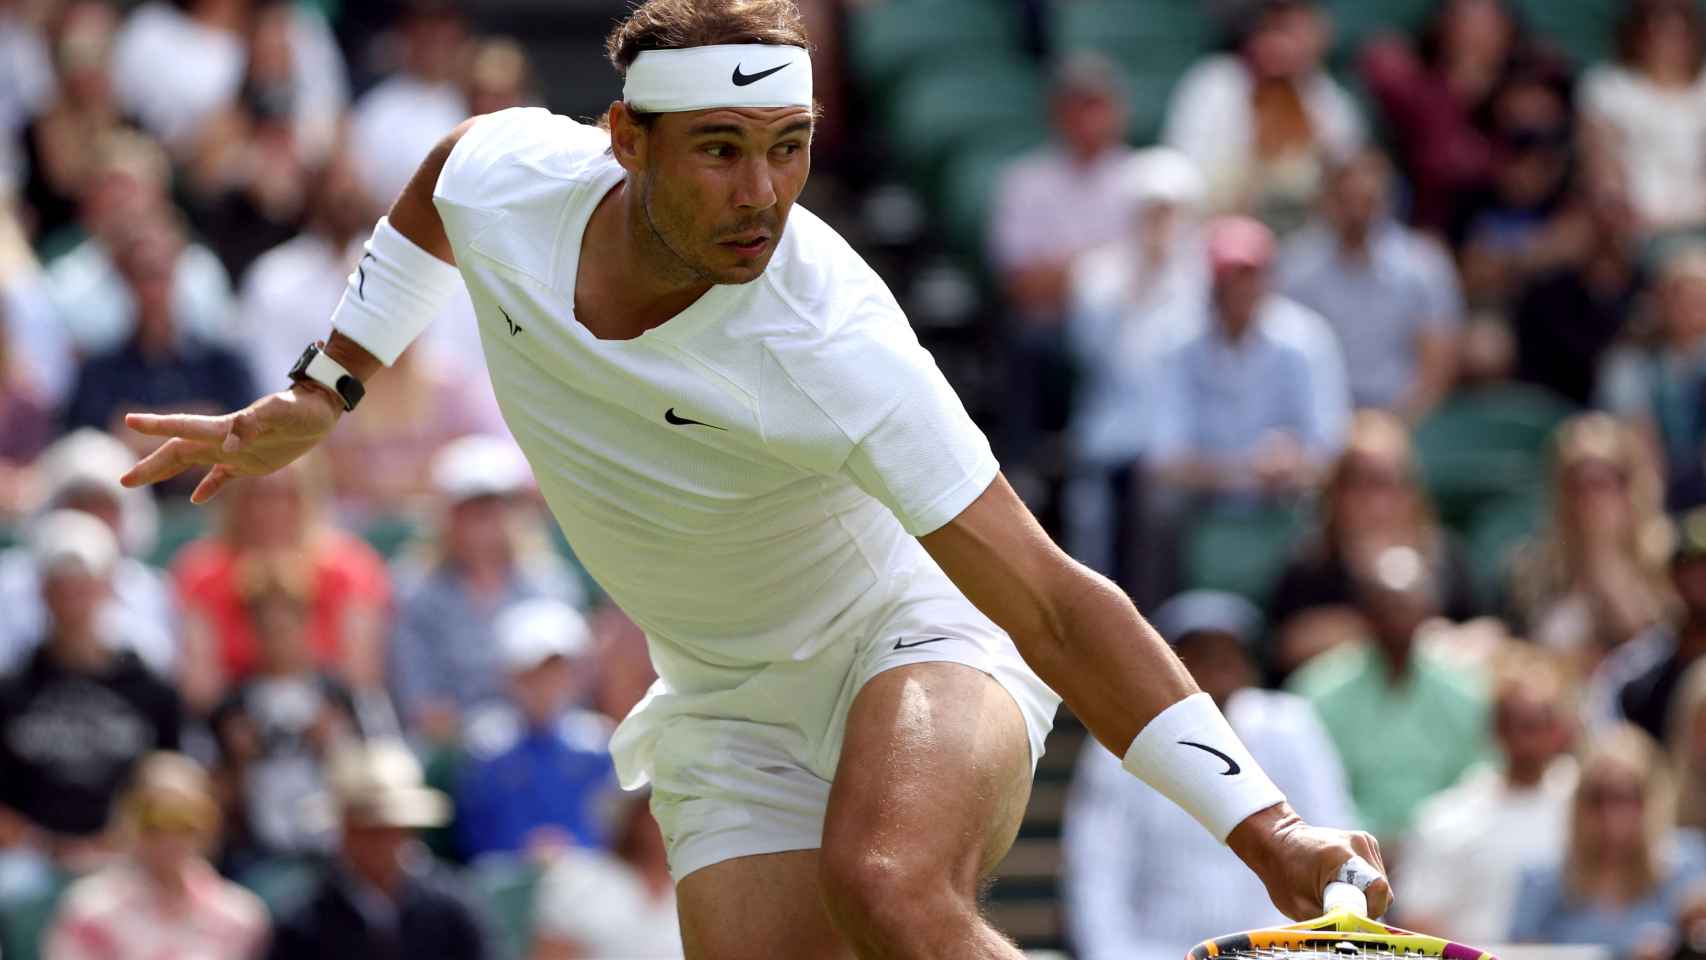 Segunda ronda de Wimbledon hoy | Nadal - Berankis en directo.